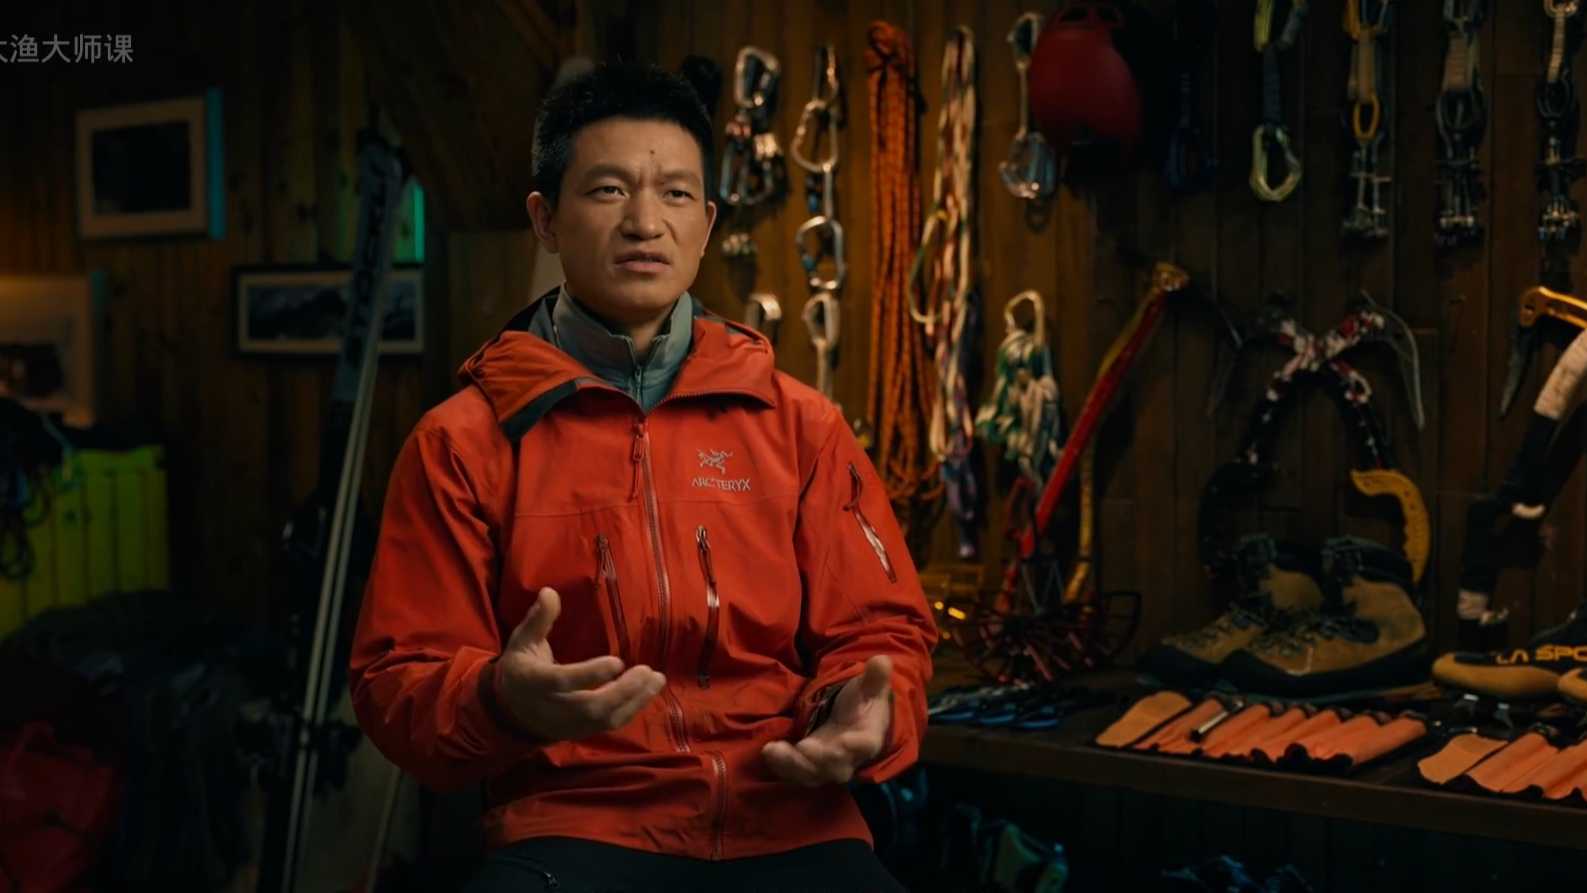 【大师课】中国著名自主攀登者_周鹏的《攀登课》周鹏_预告片